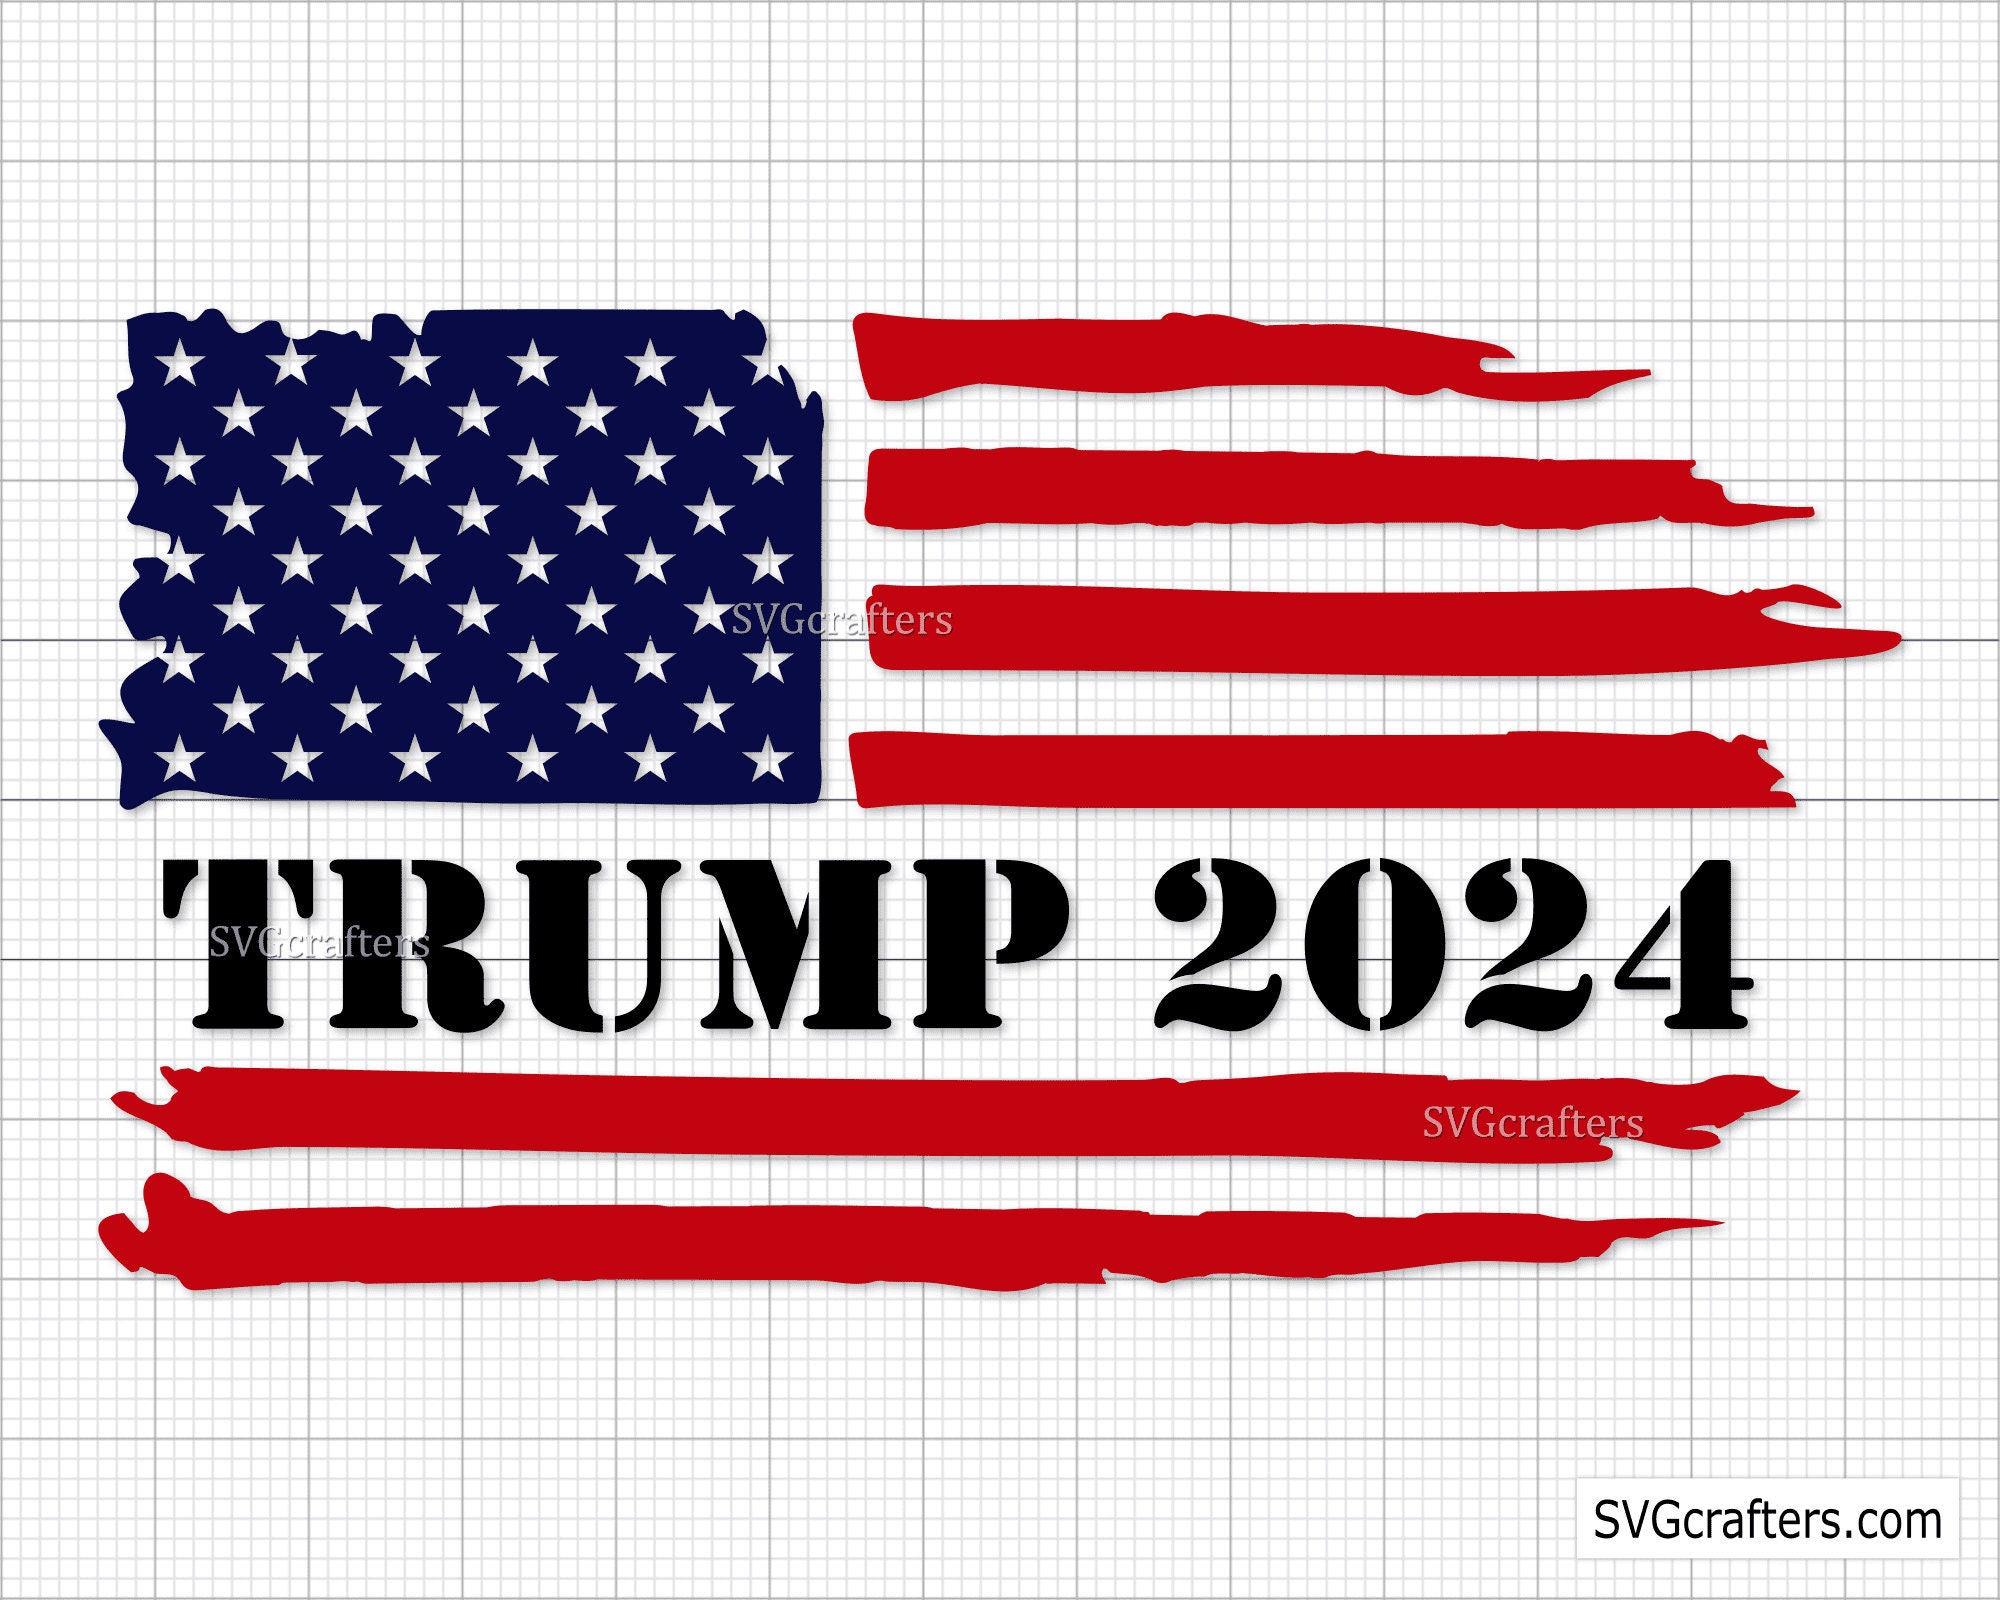 Trump 2024 svg Trump Svg Png Trump vlag png 4 juli svg Etsy Nederland